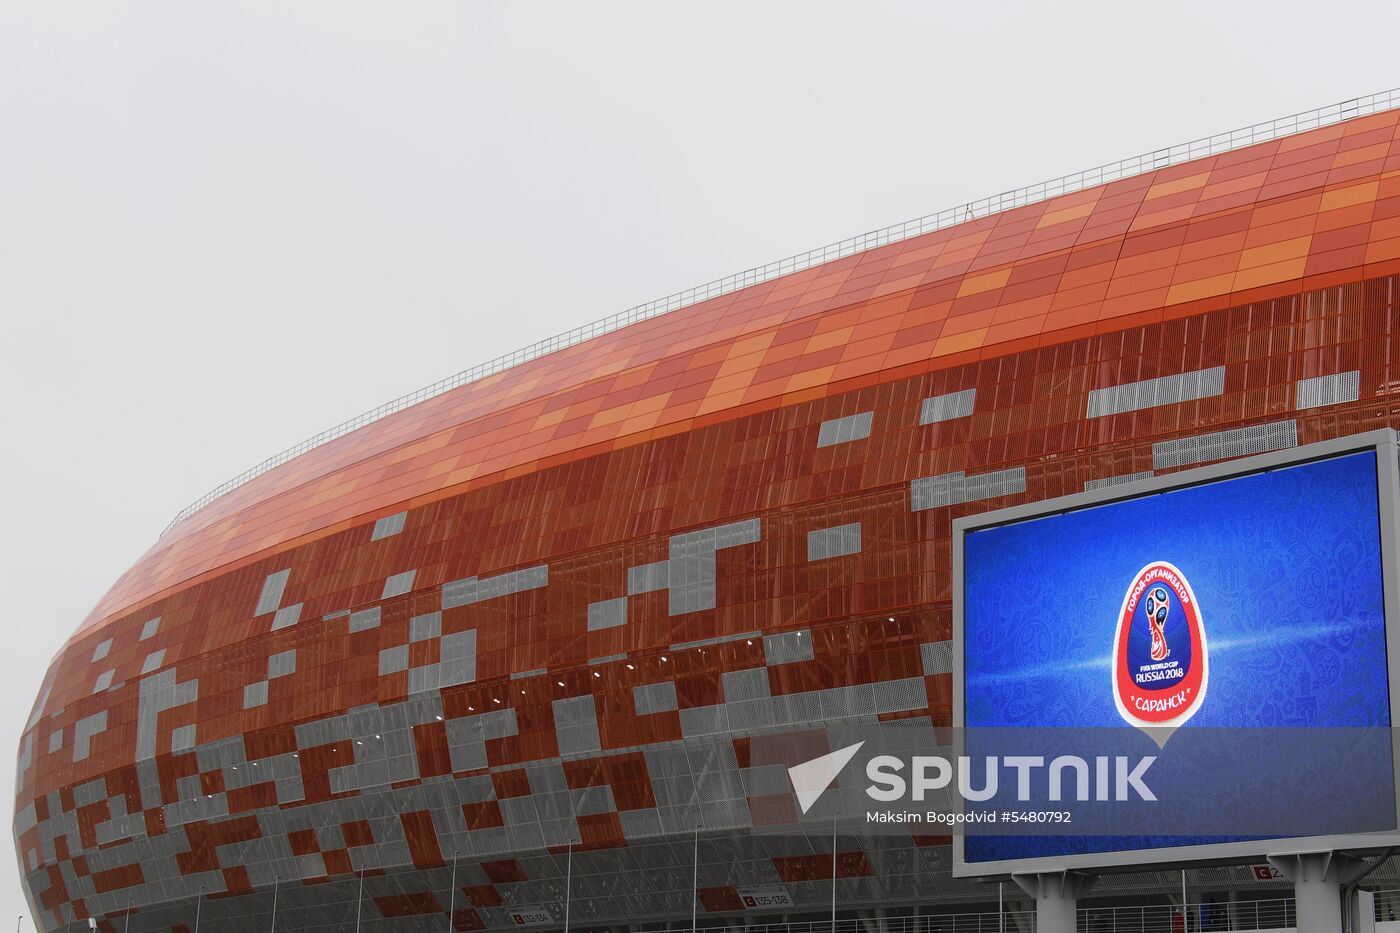 Mordovia Arena stadium in Saransk